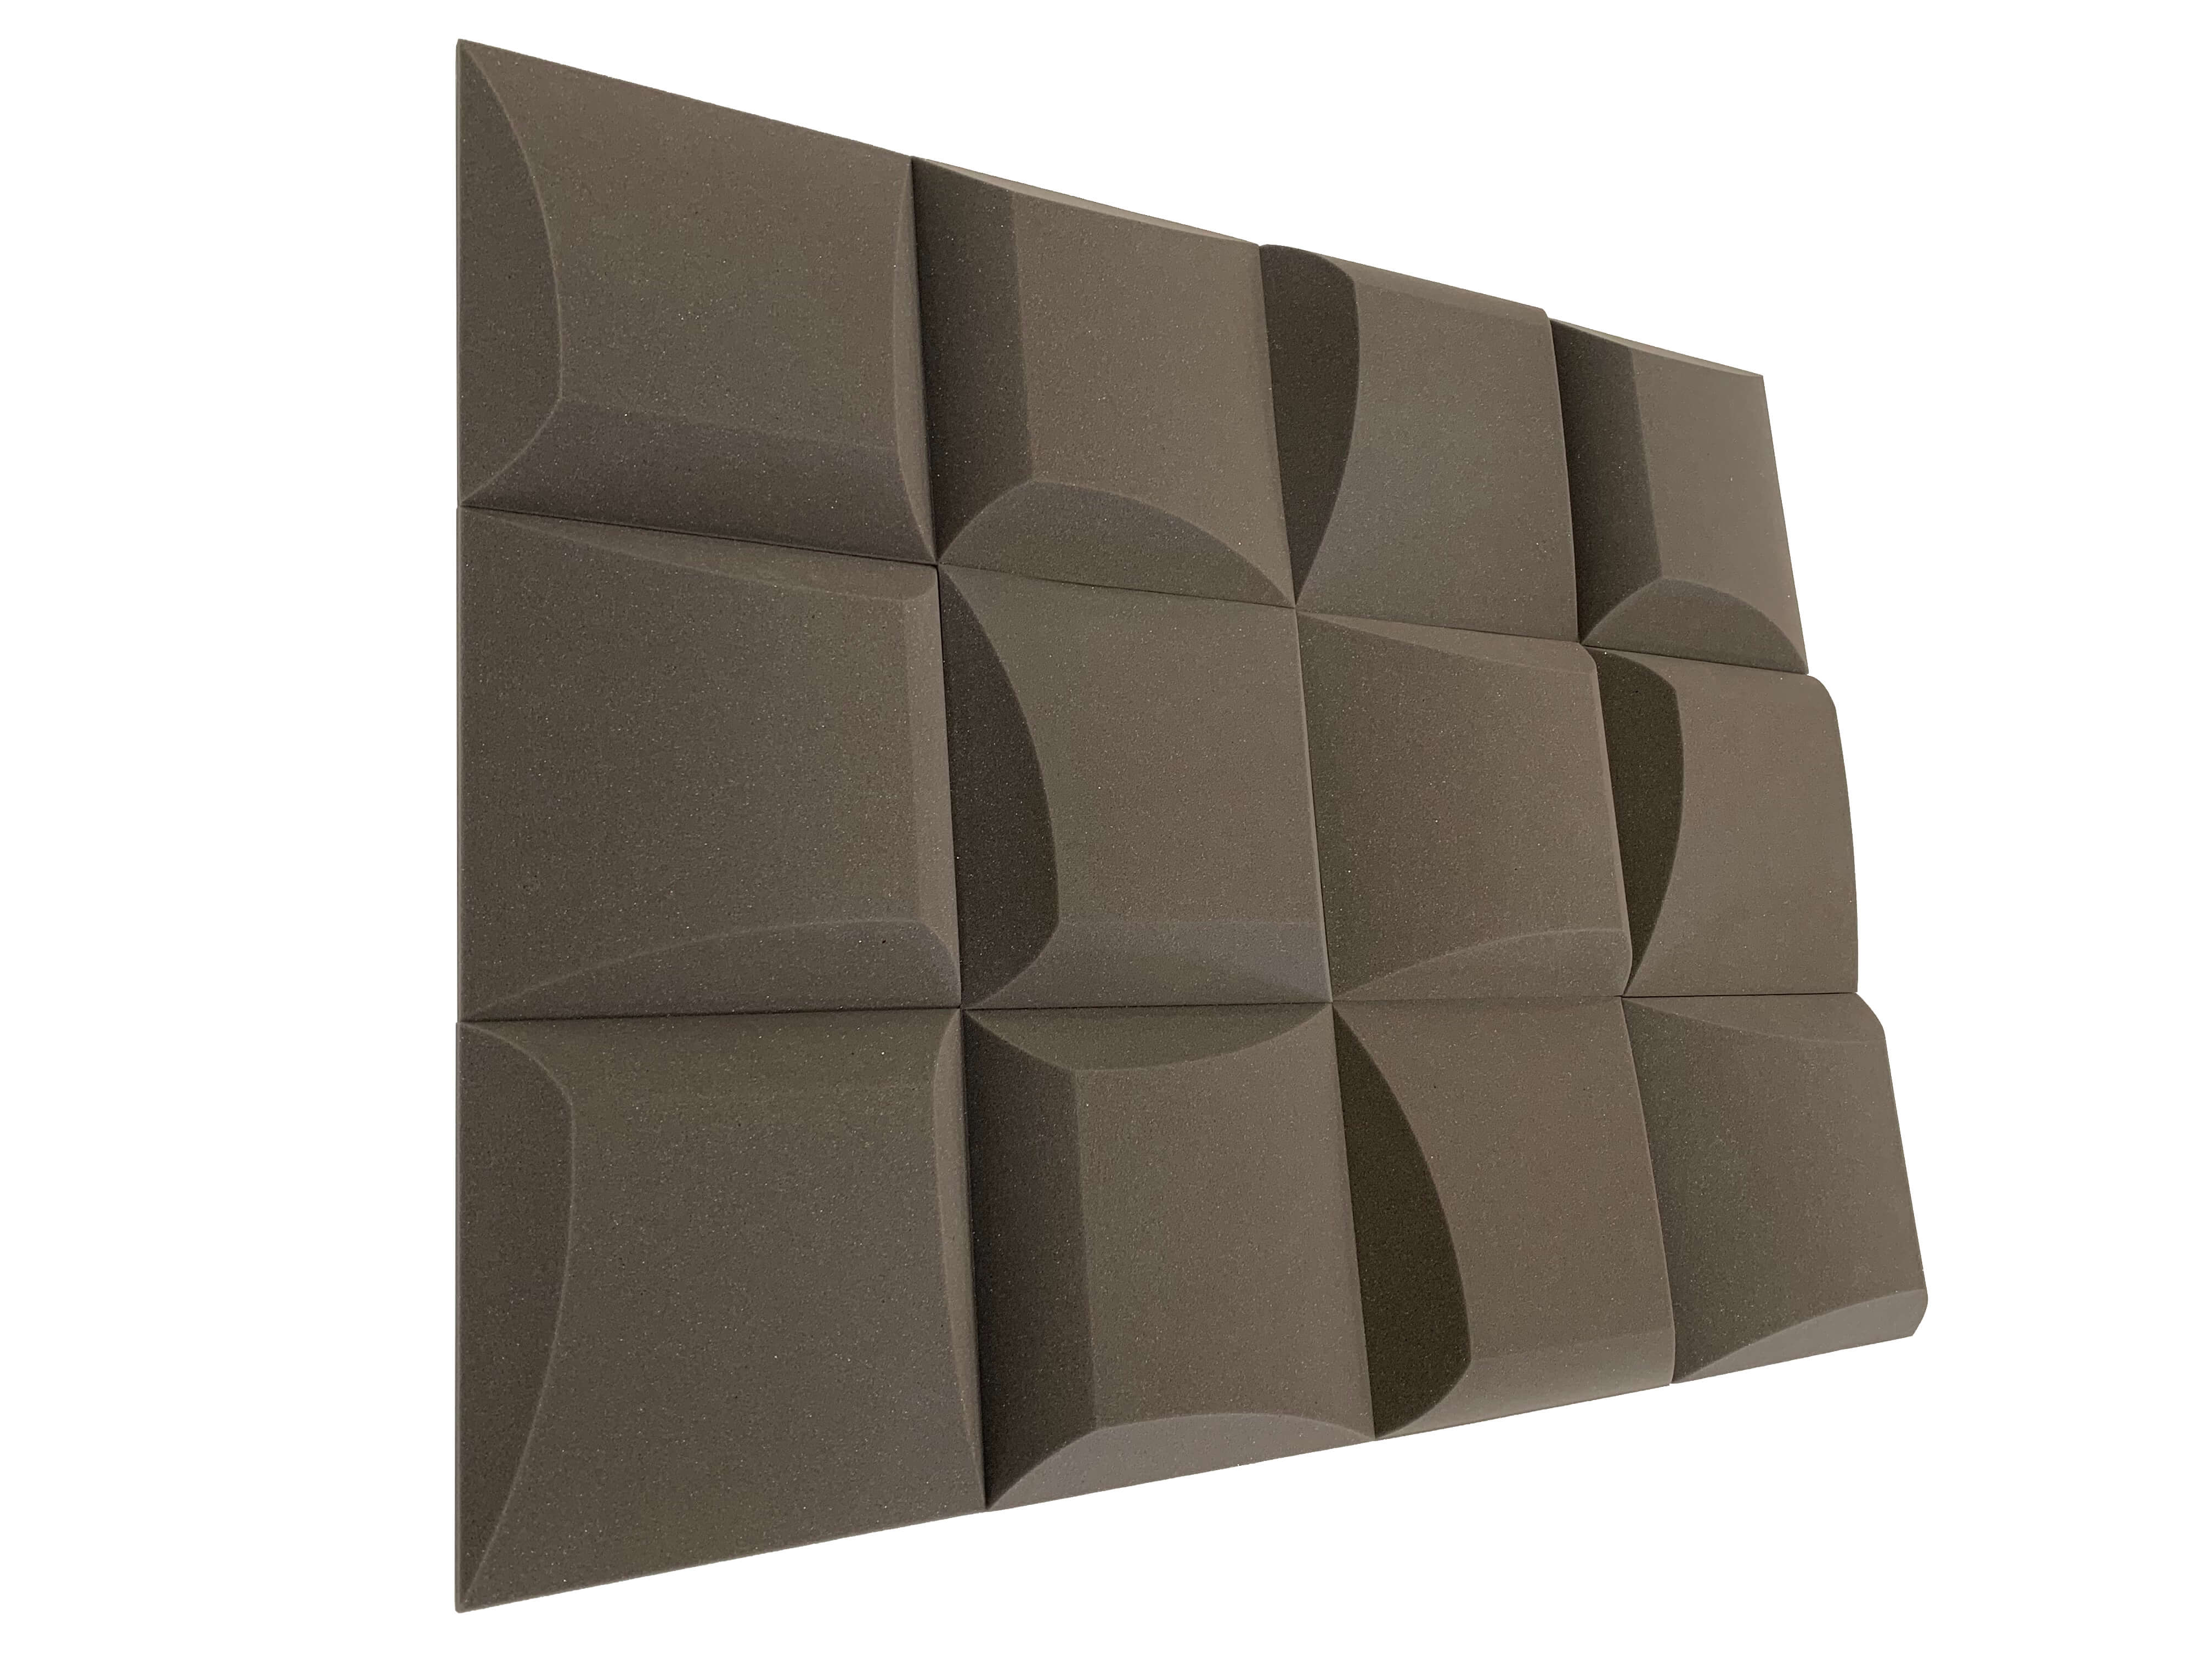 AeroFoil 12" Acoustic Studio Foam Tile Pack - 12 Tiles, 1.1qm Coverage-2